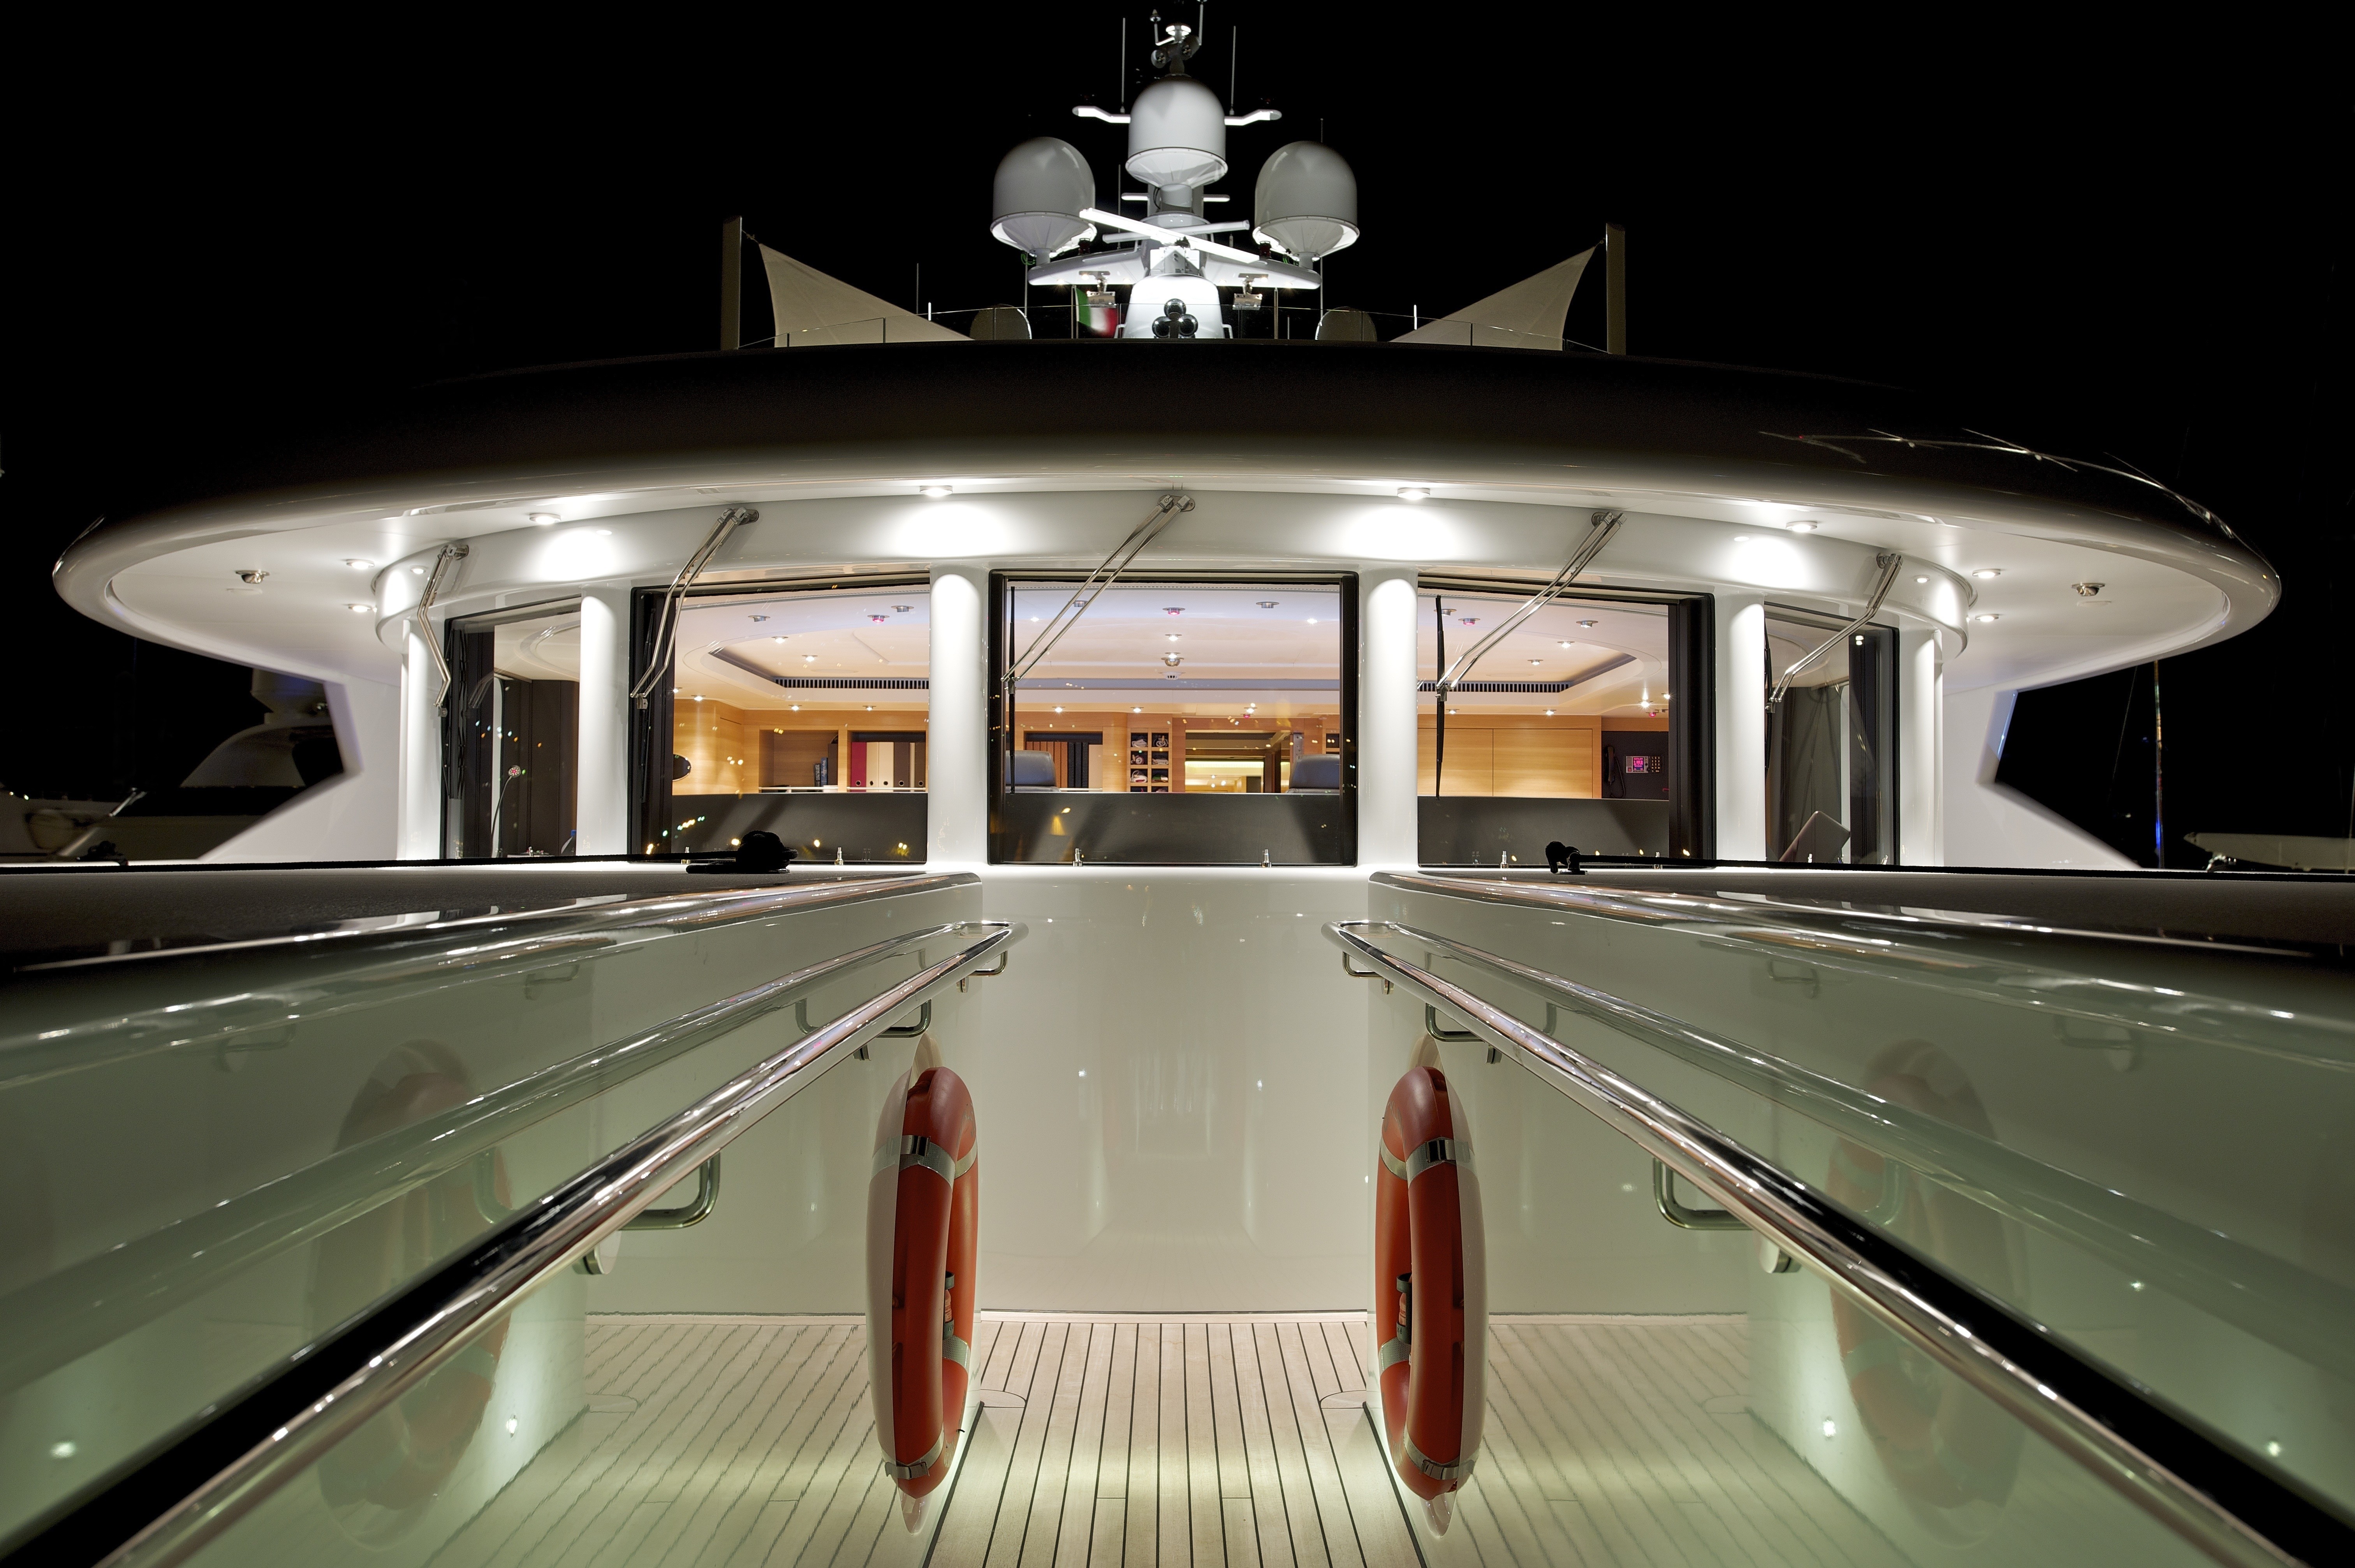 The 60m Yacht CAIPIRINHA